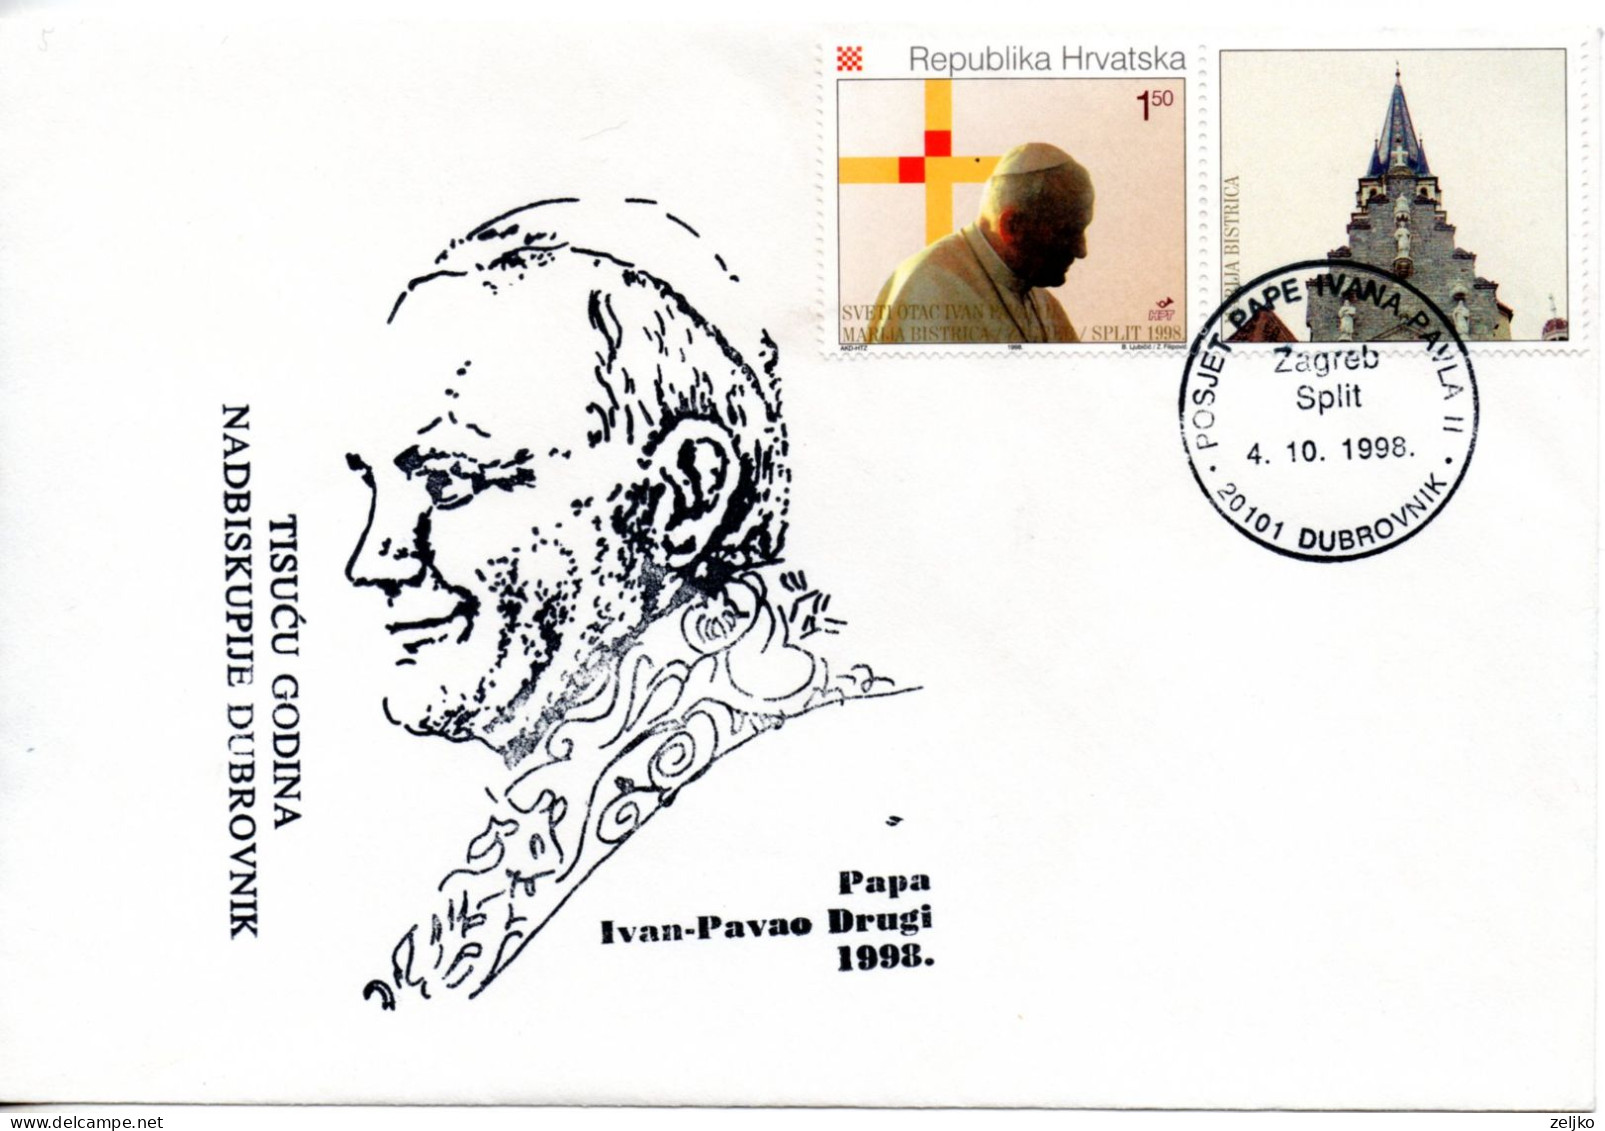 Croatia, Pope John Paul II, Secondpastoral Visit To Croatia 1998, Cancel Dubrovnik - Päpste